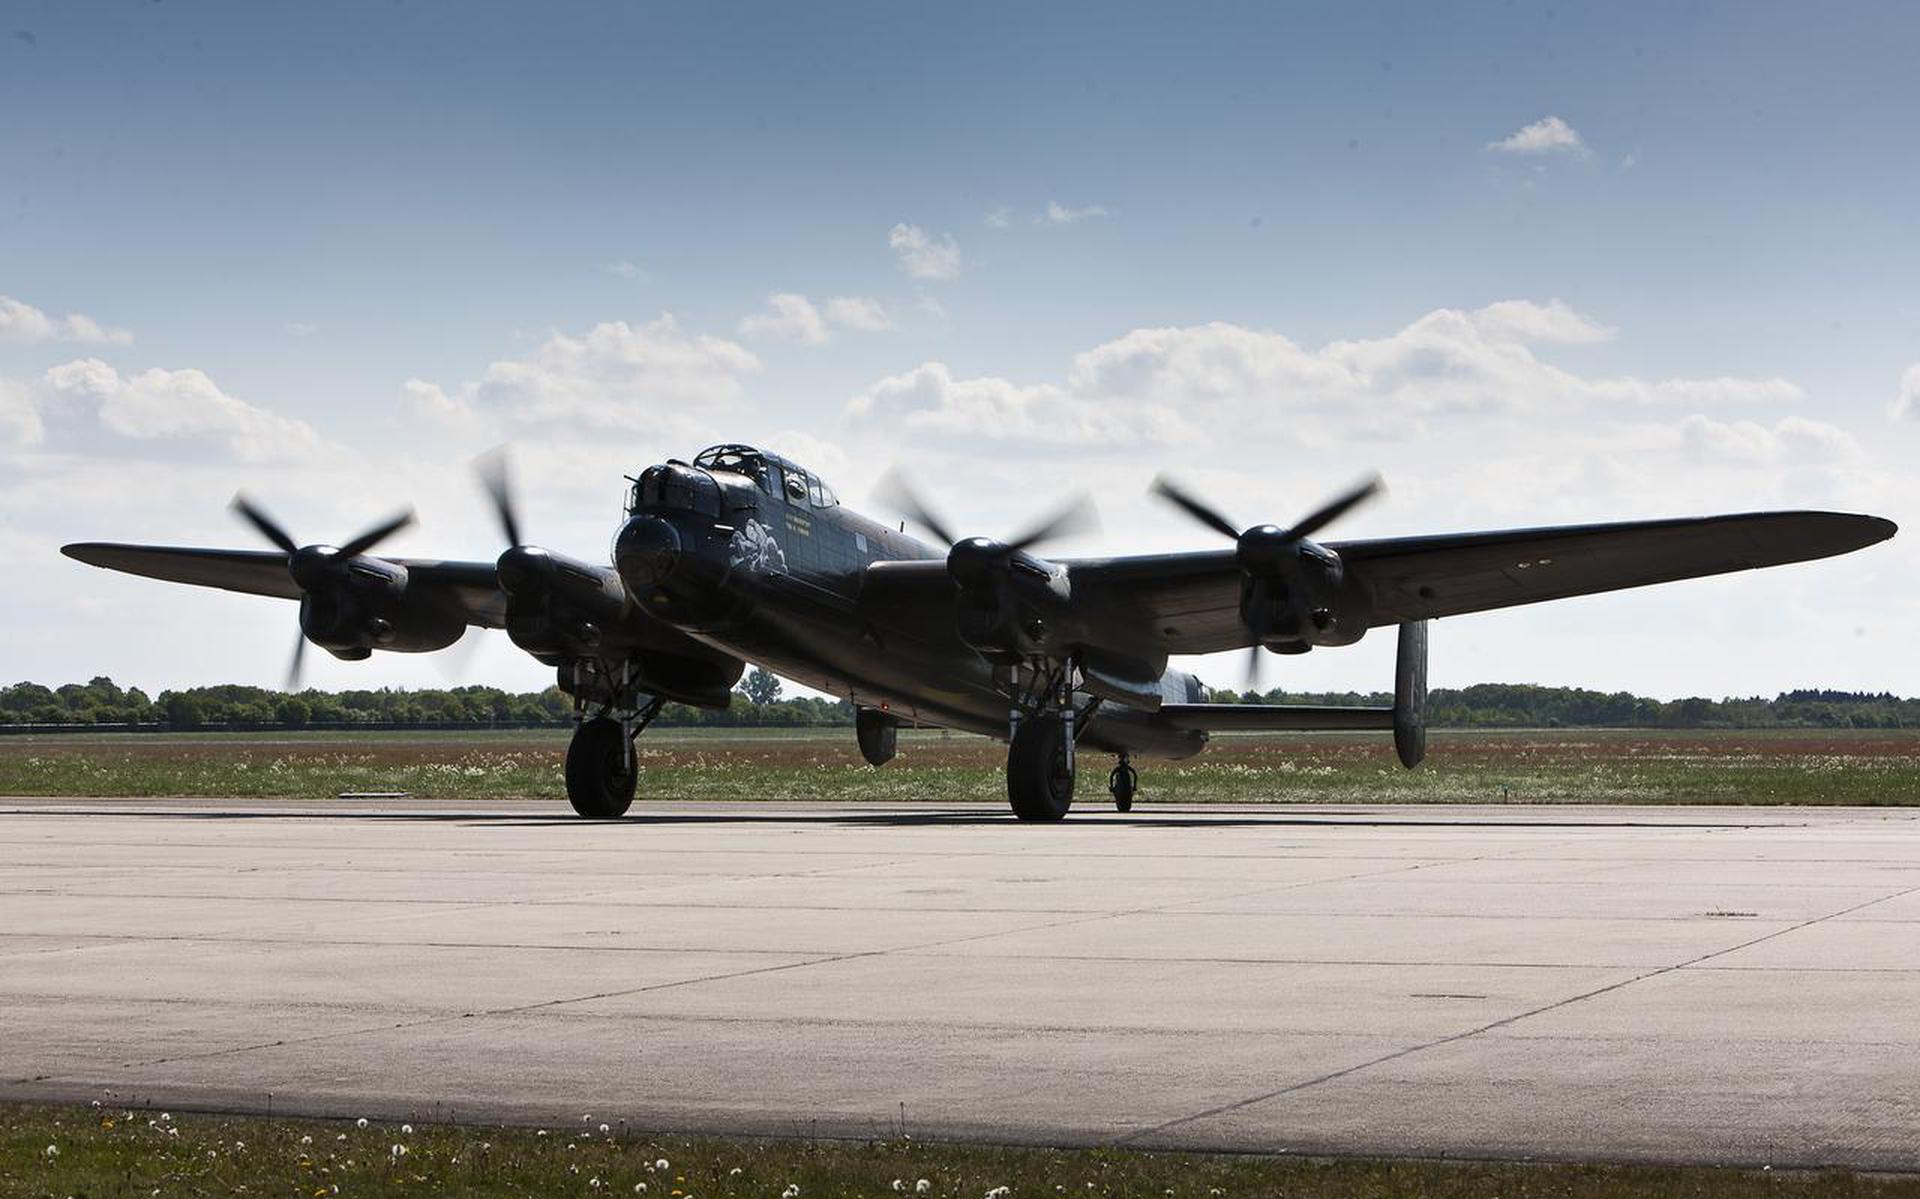 Groot-Brittannië gebruikte tijdens de Tweede Wereldoorlog veelvuldig de zware bommenwerpers van het type Avo Lancaster om Duitsland te bombarderen. Het hier getoonde exemplaar is nog vliegwaardig en landde in 2011 op vliegveld Eelde.
